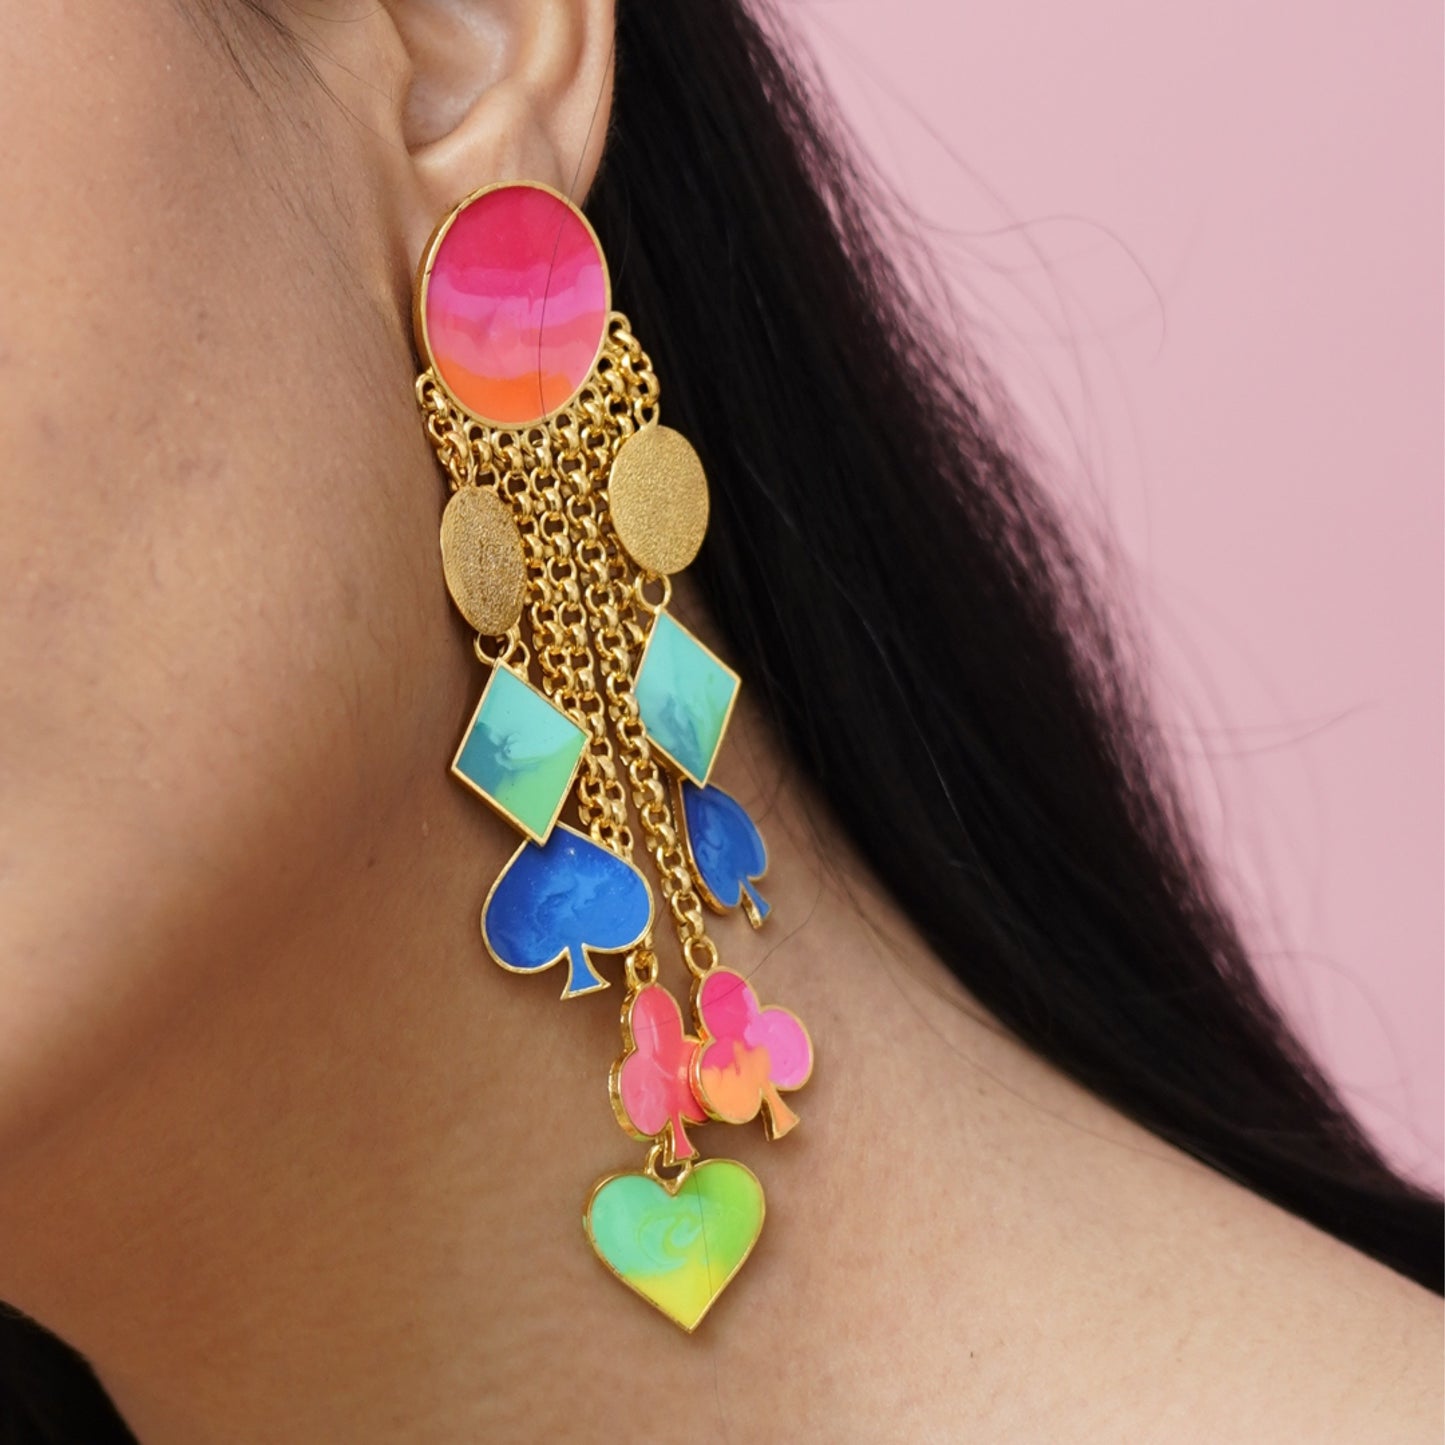 La Fortuna earrings